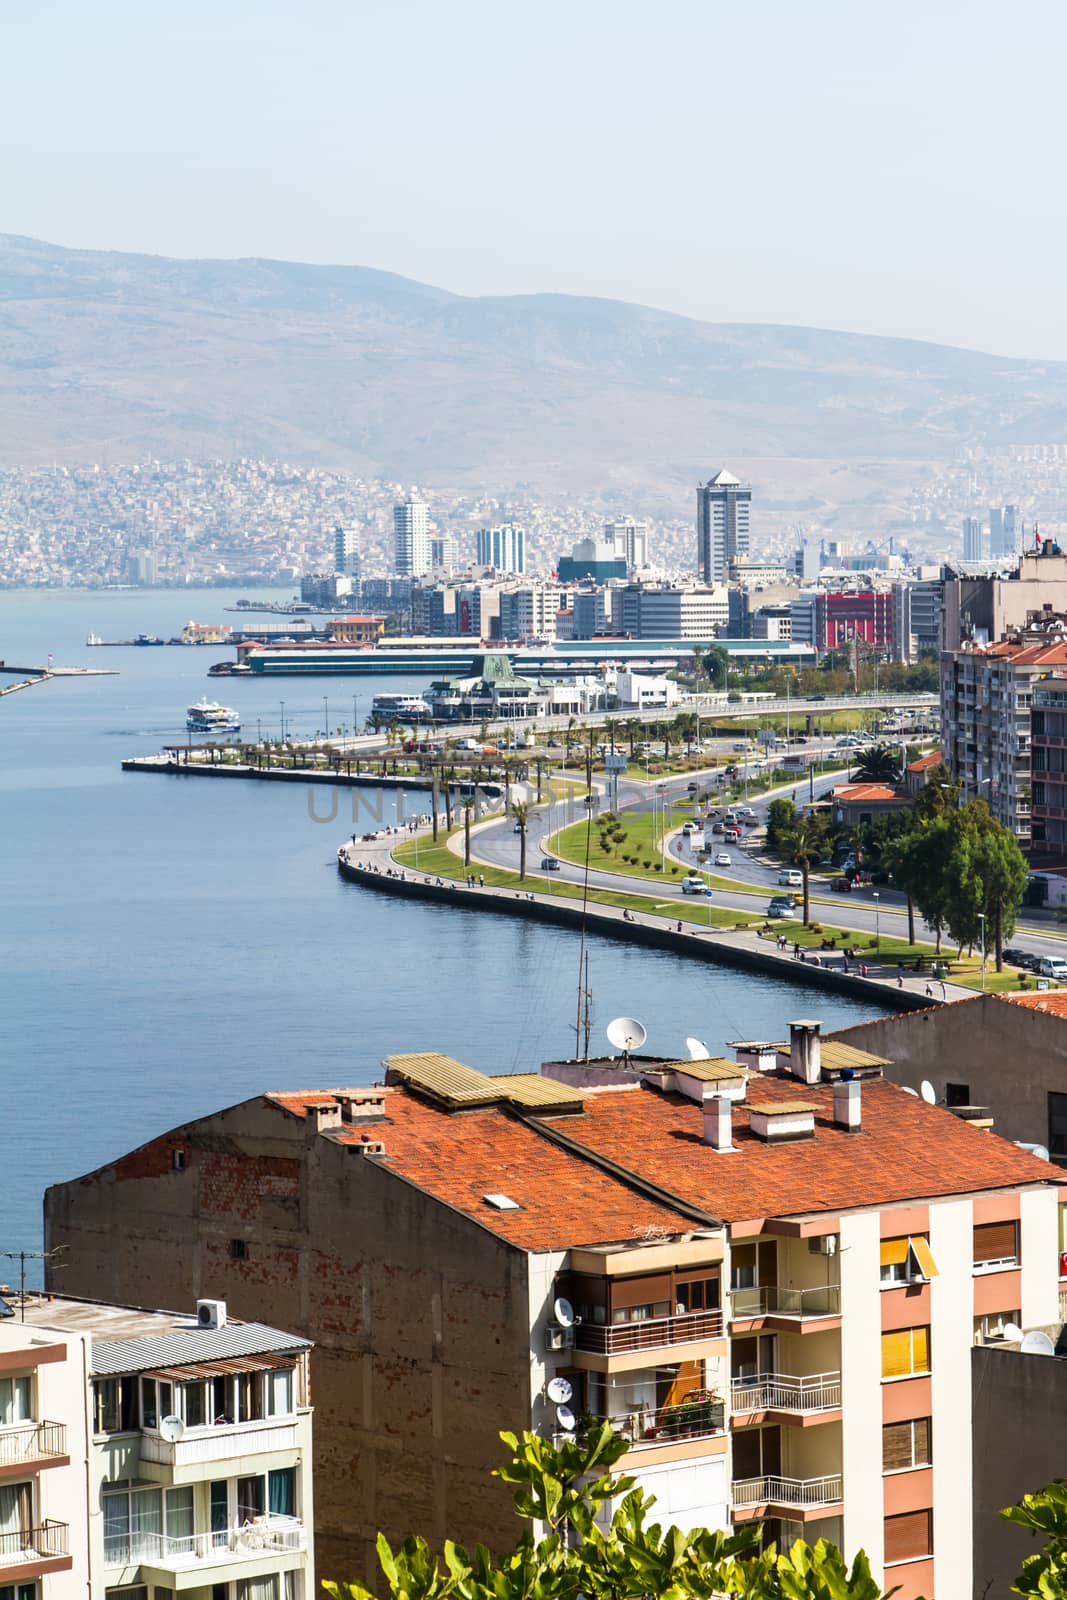 View of modern city in Izmir, Turkey.